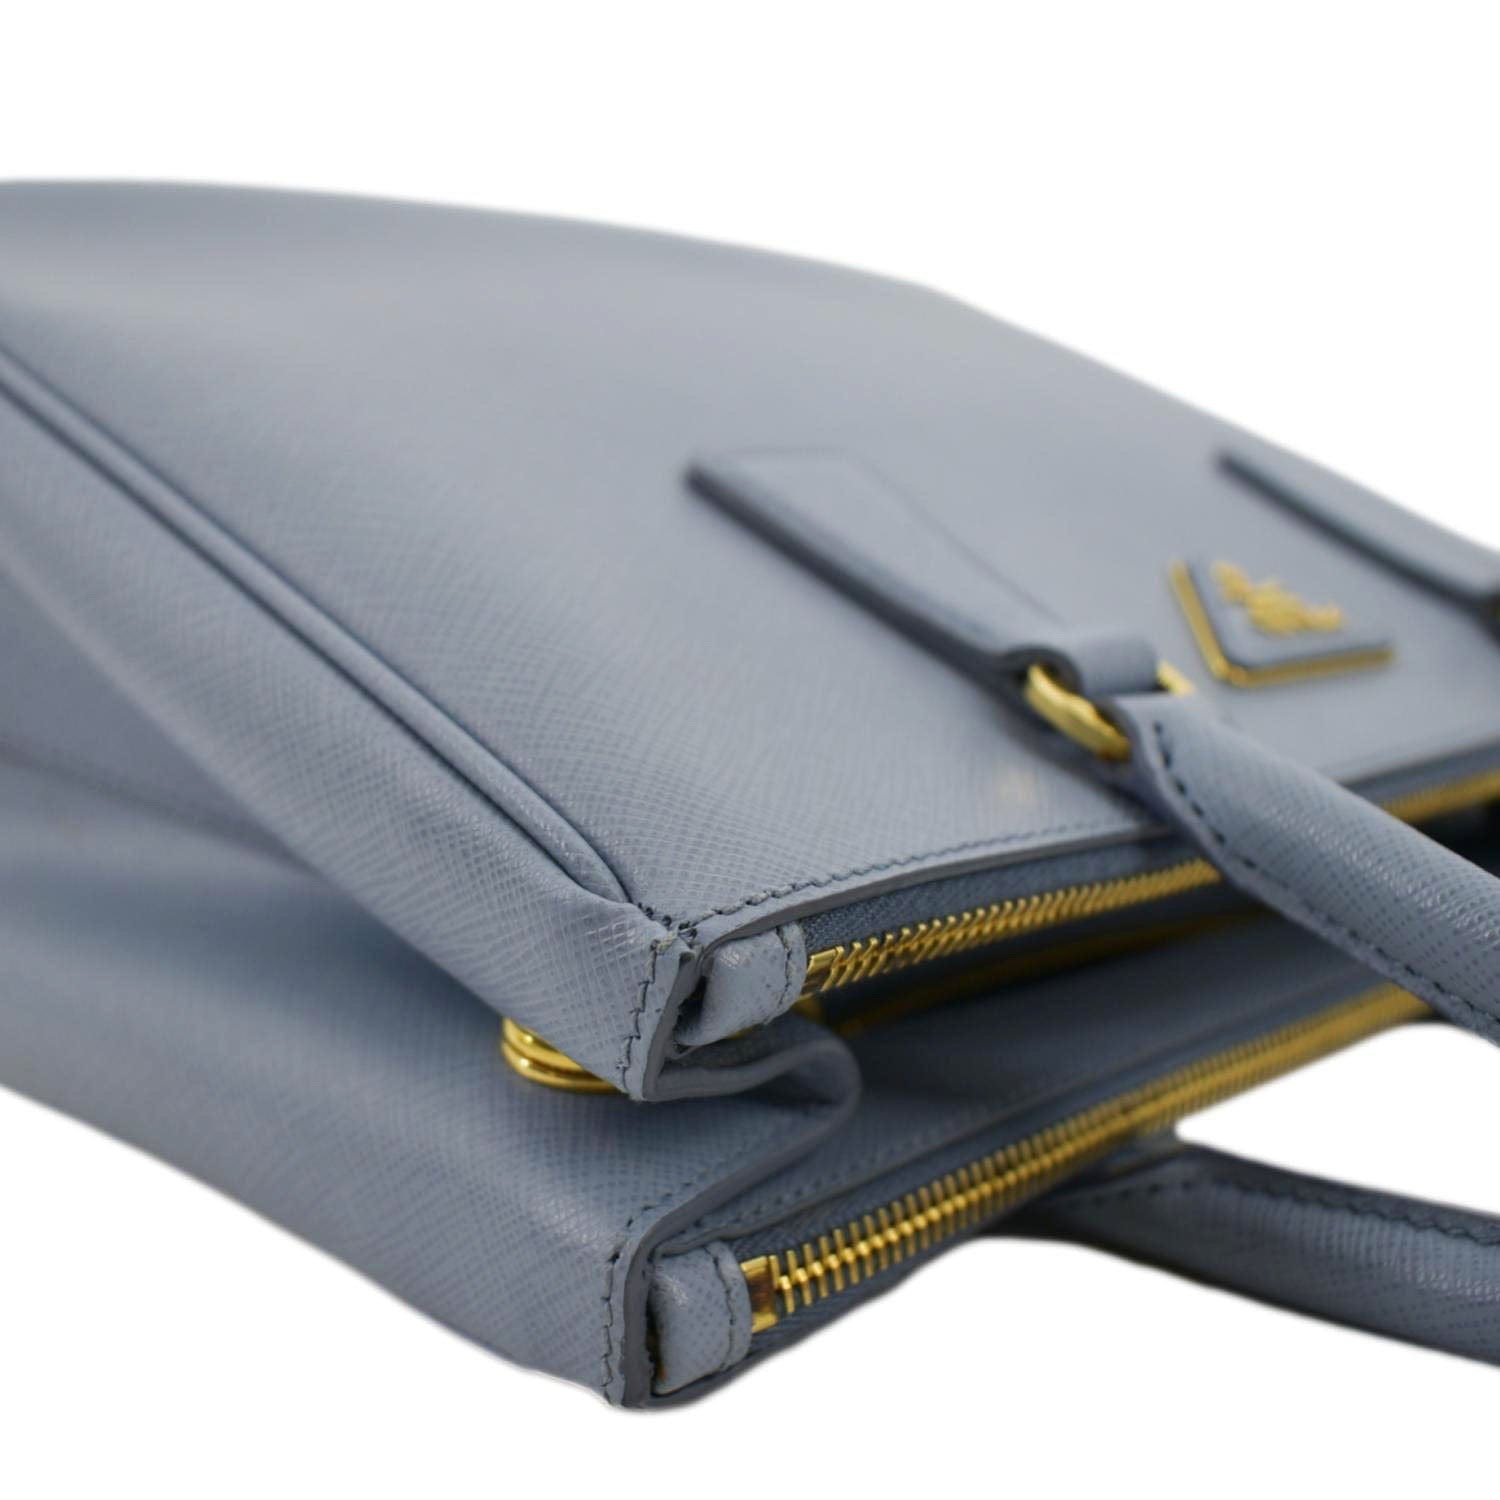 Prada Small Saffiano Lux Galleria Double Zip Tote - Black Handle Bags,  Handbags - PRA875287